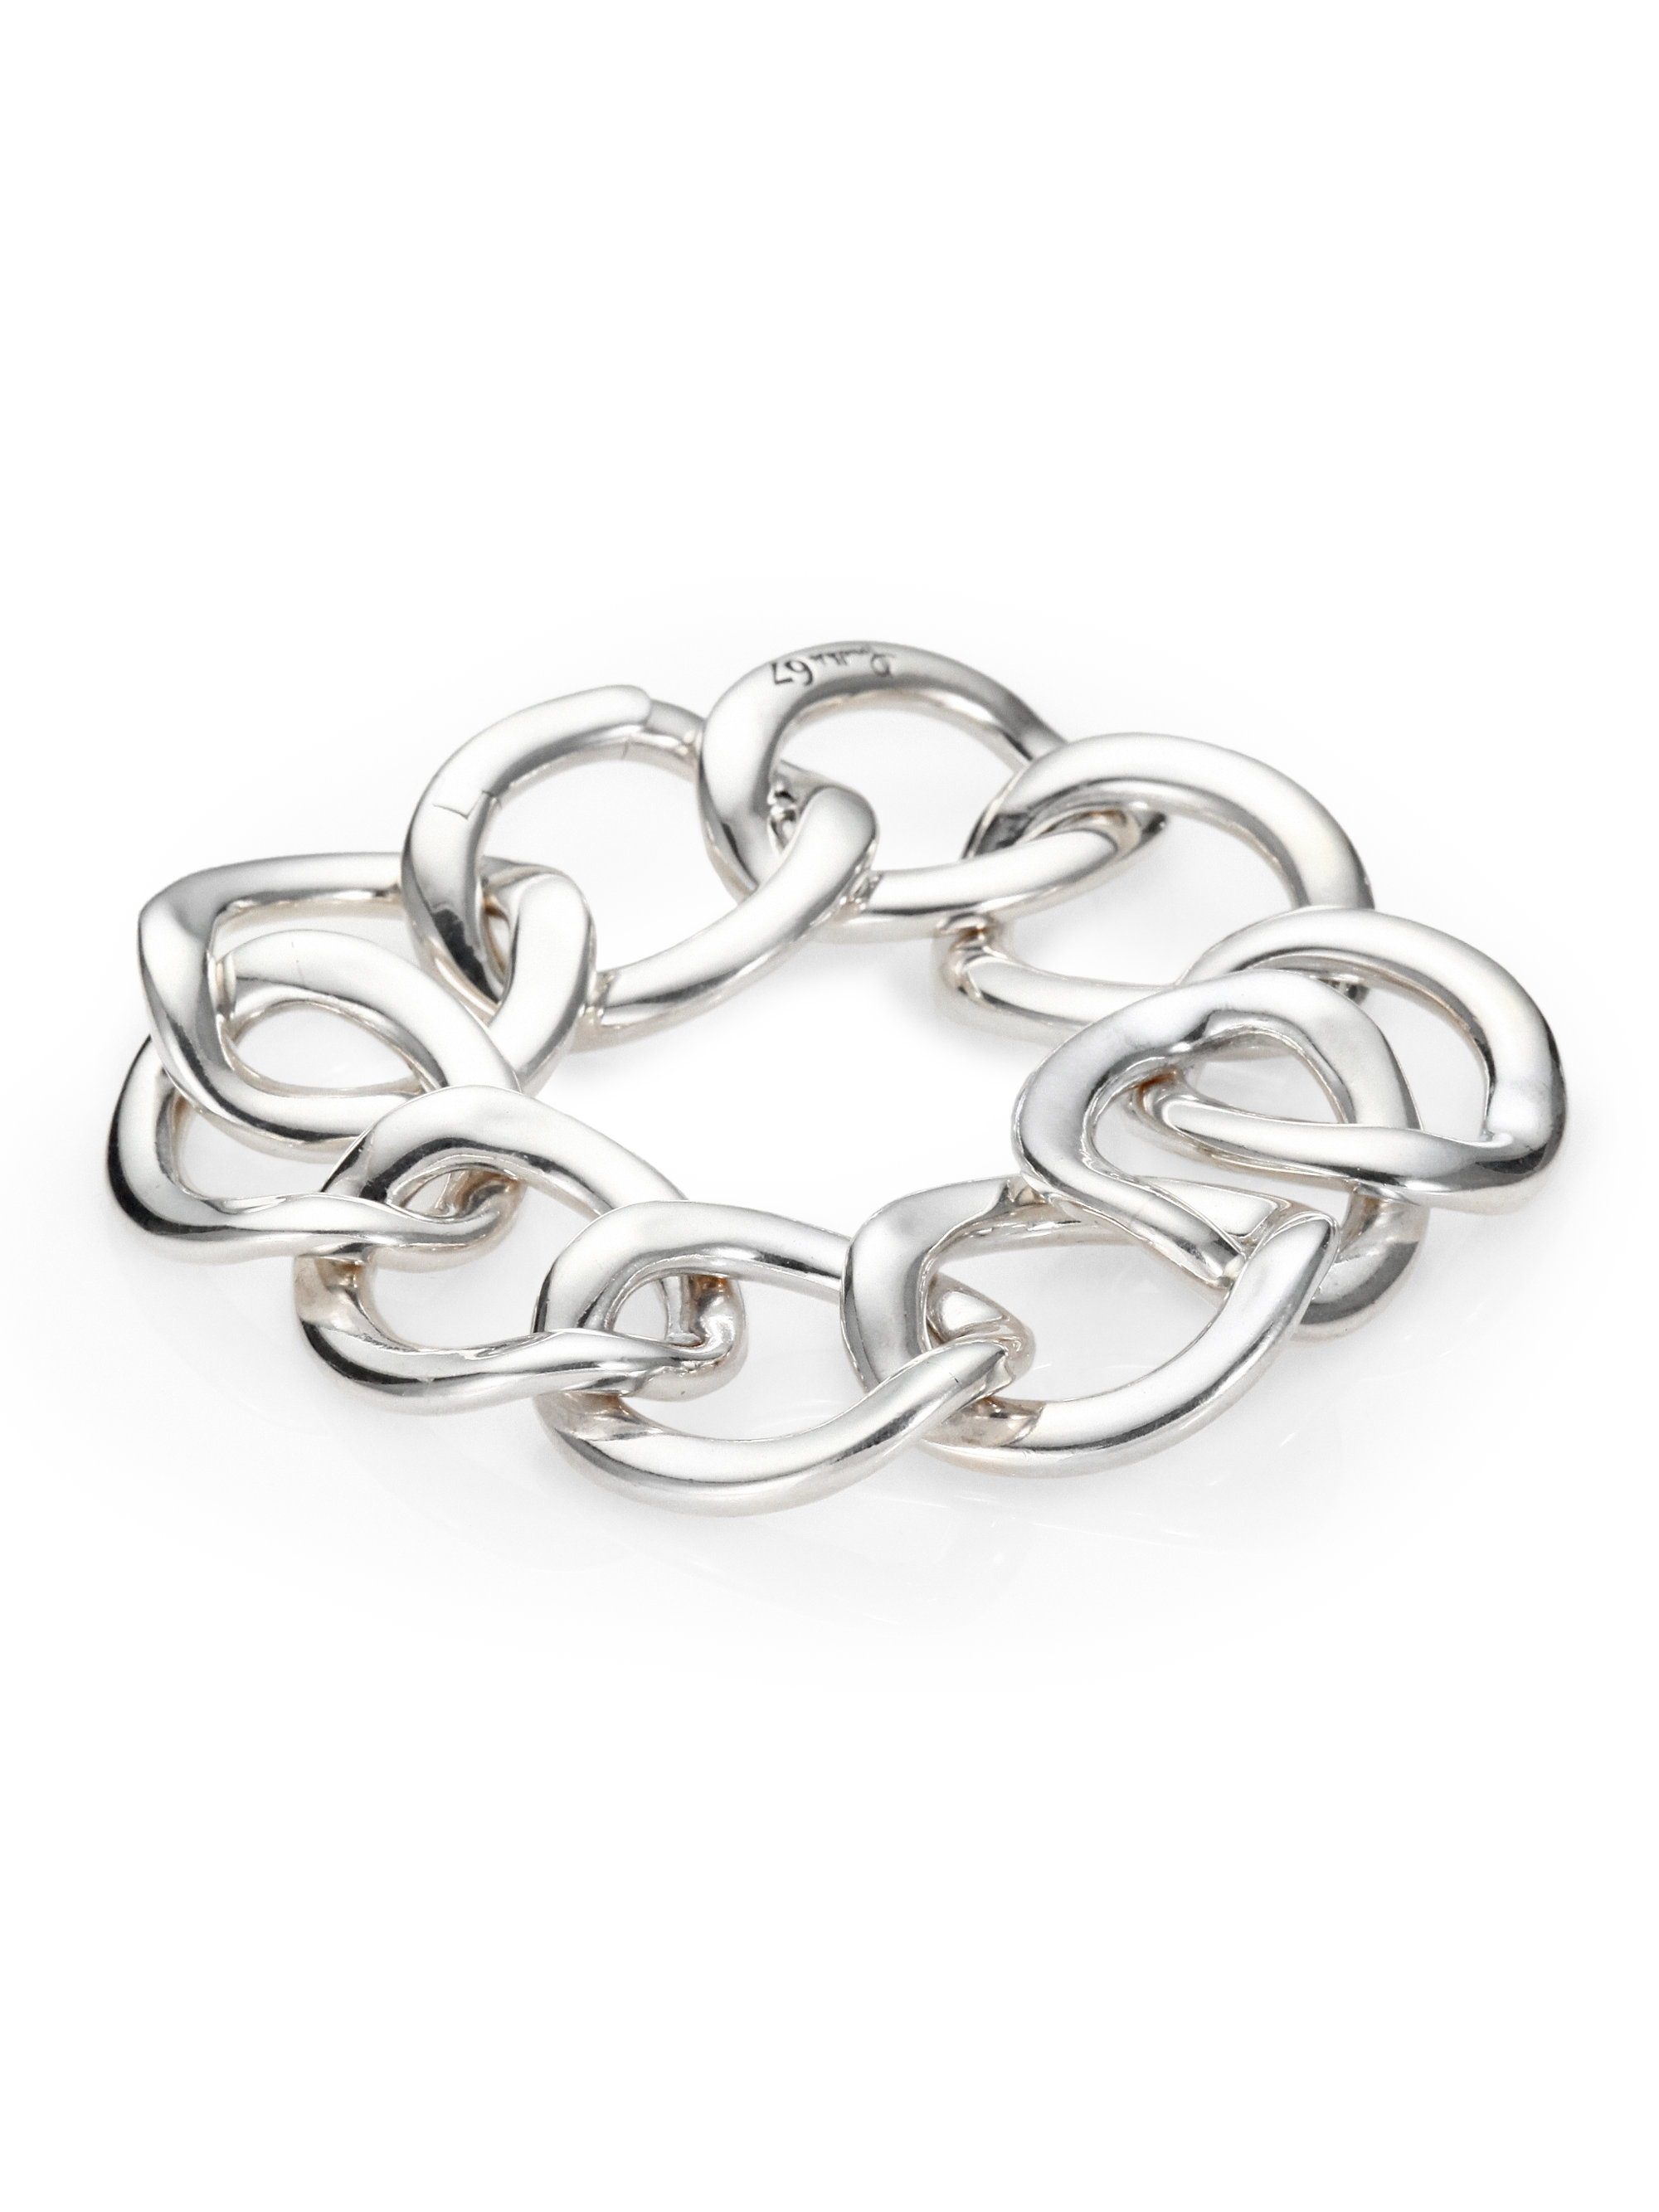 Lyst - Pomellato Sterling Silver Flat Chain Link Bracelet in Metallic